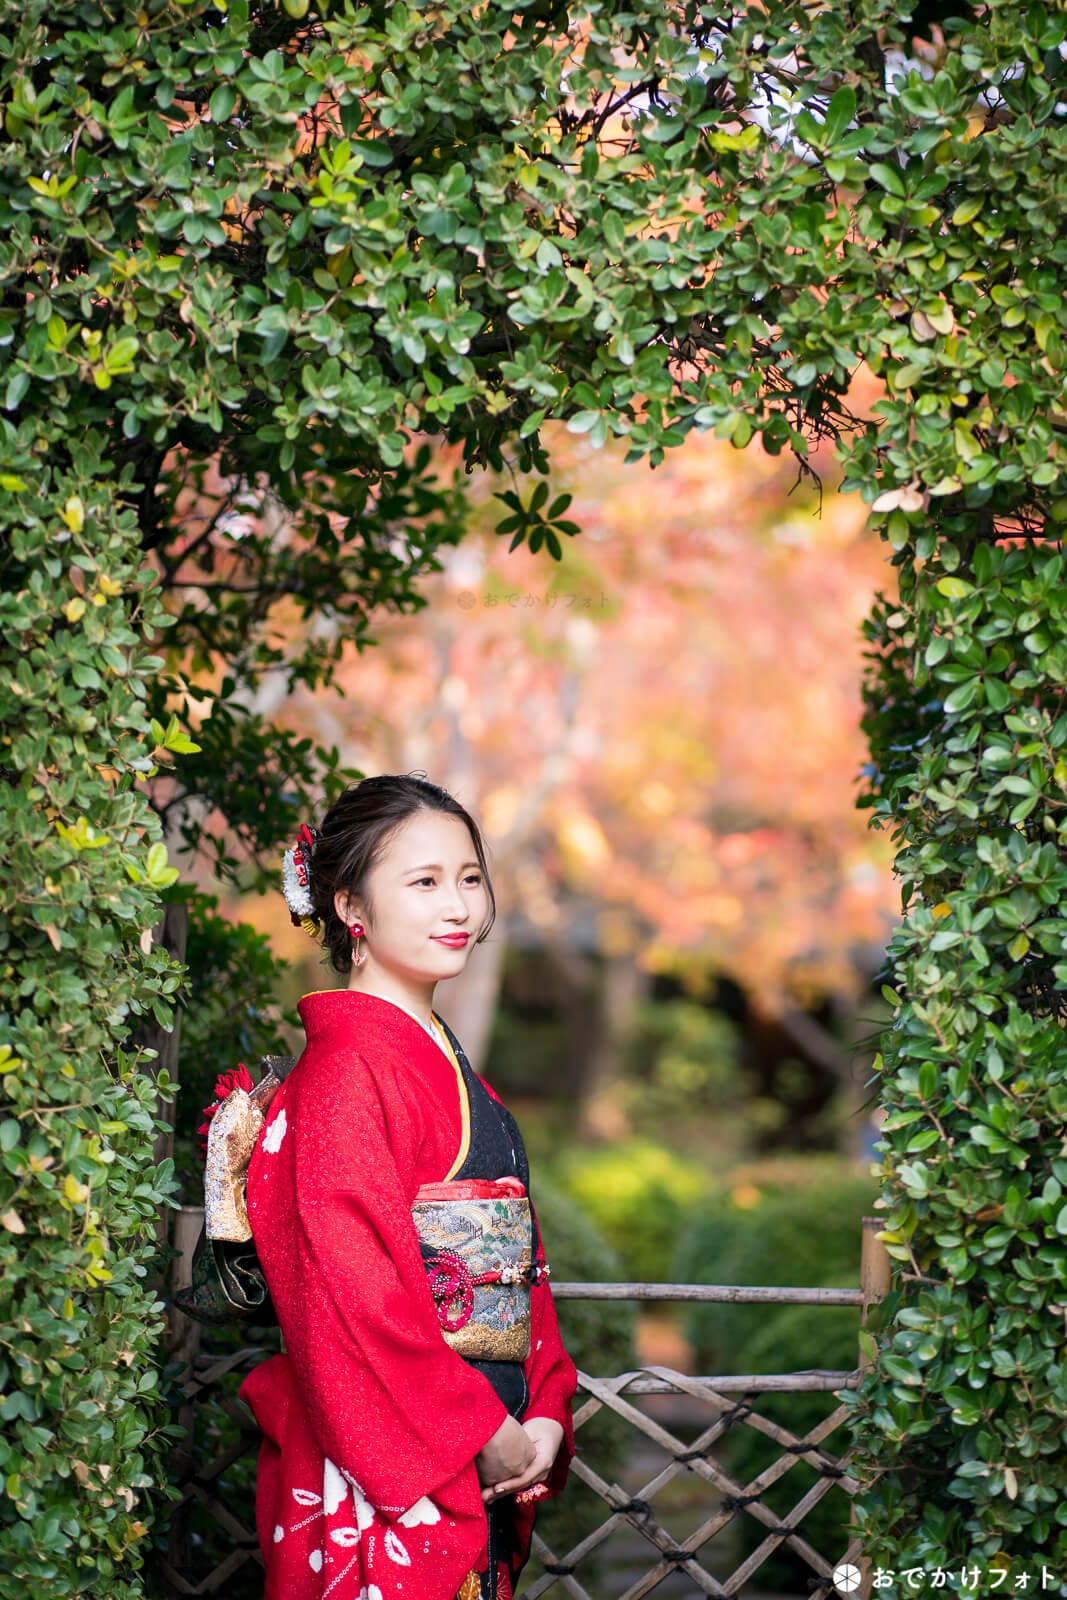 大濠公園の日本庭園で成人式前撮り